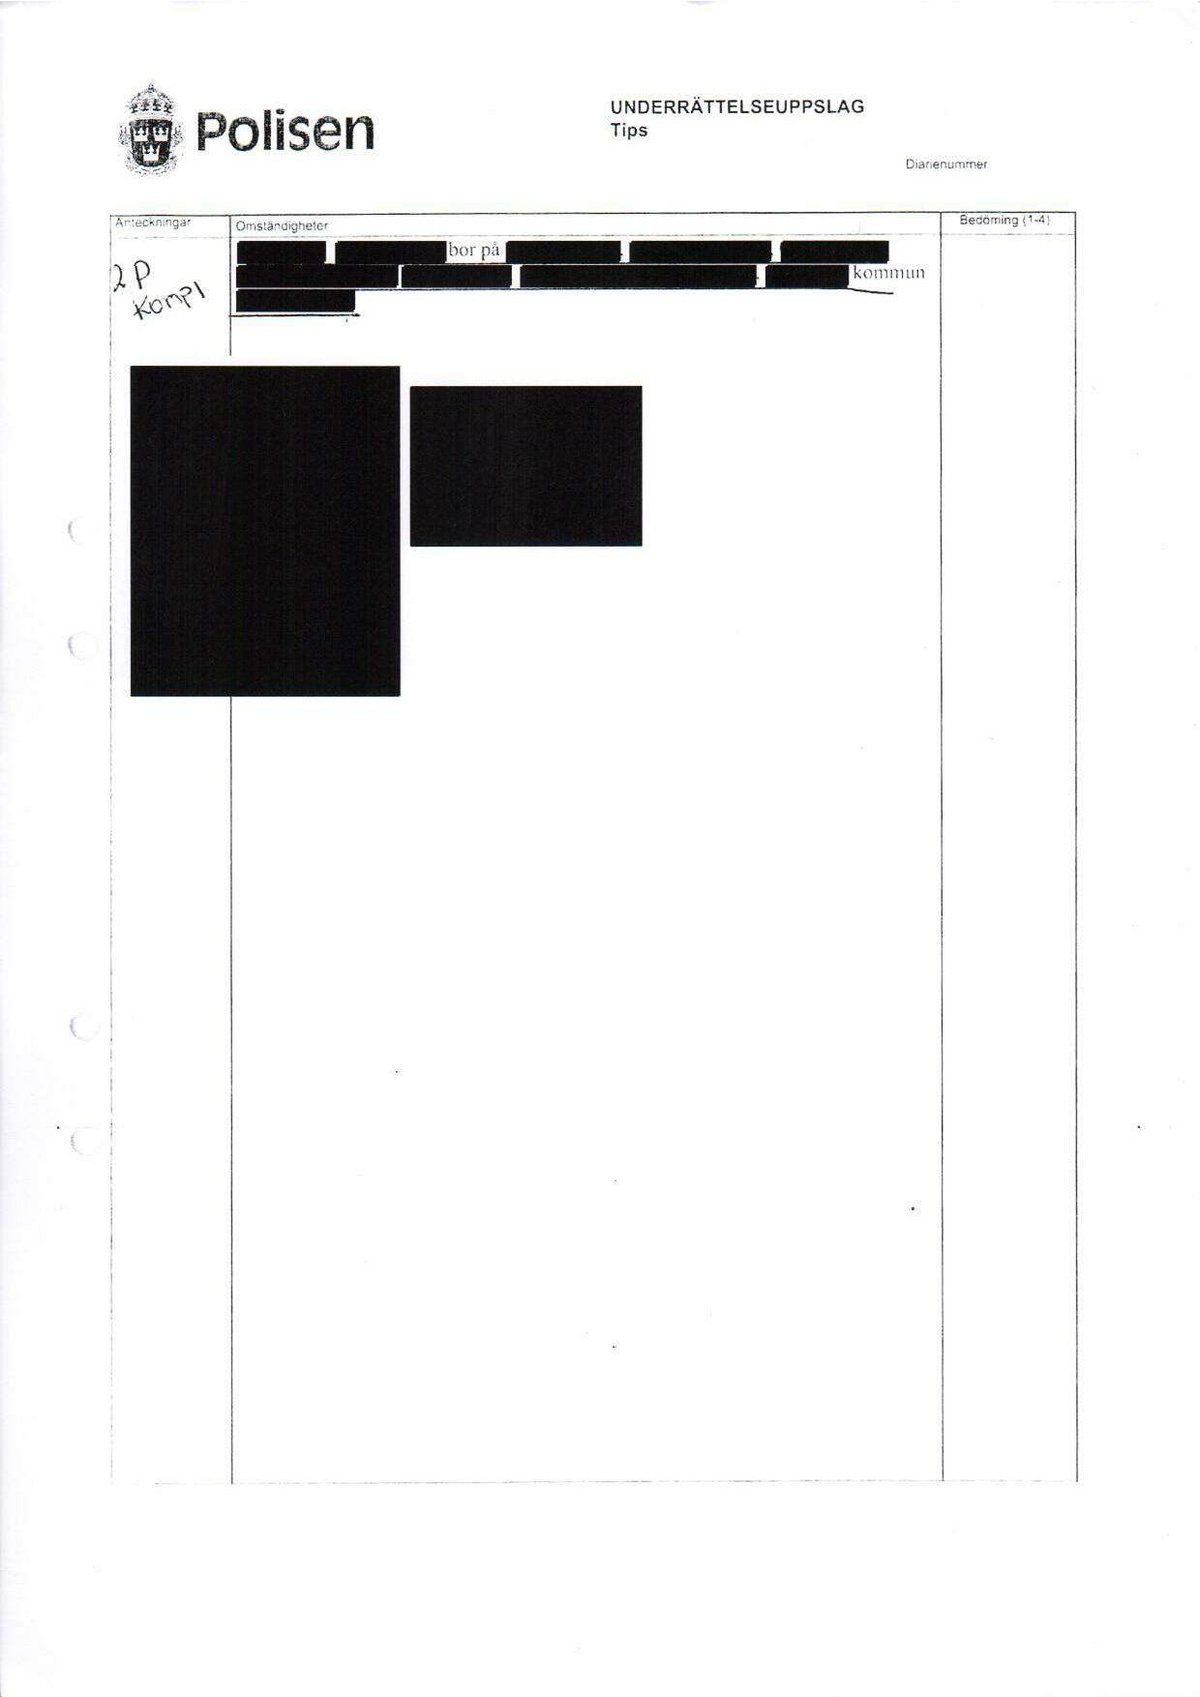 Pol-2013-01-31 D21109-00-A Erkännanden Palmemordet.pdf